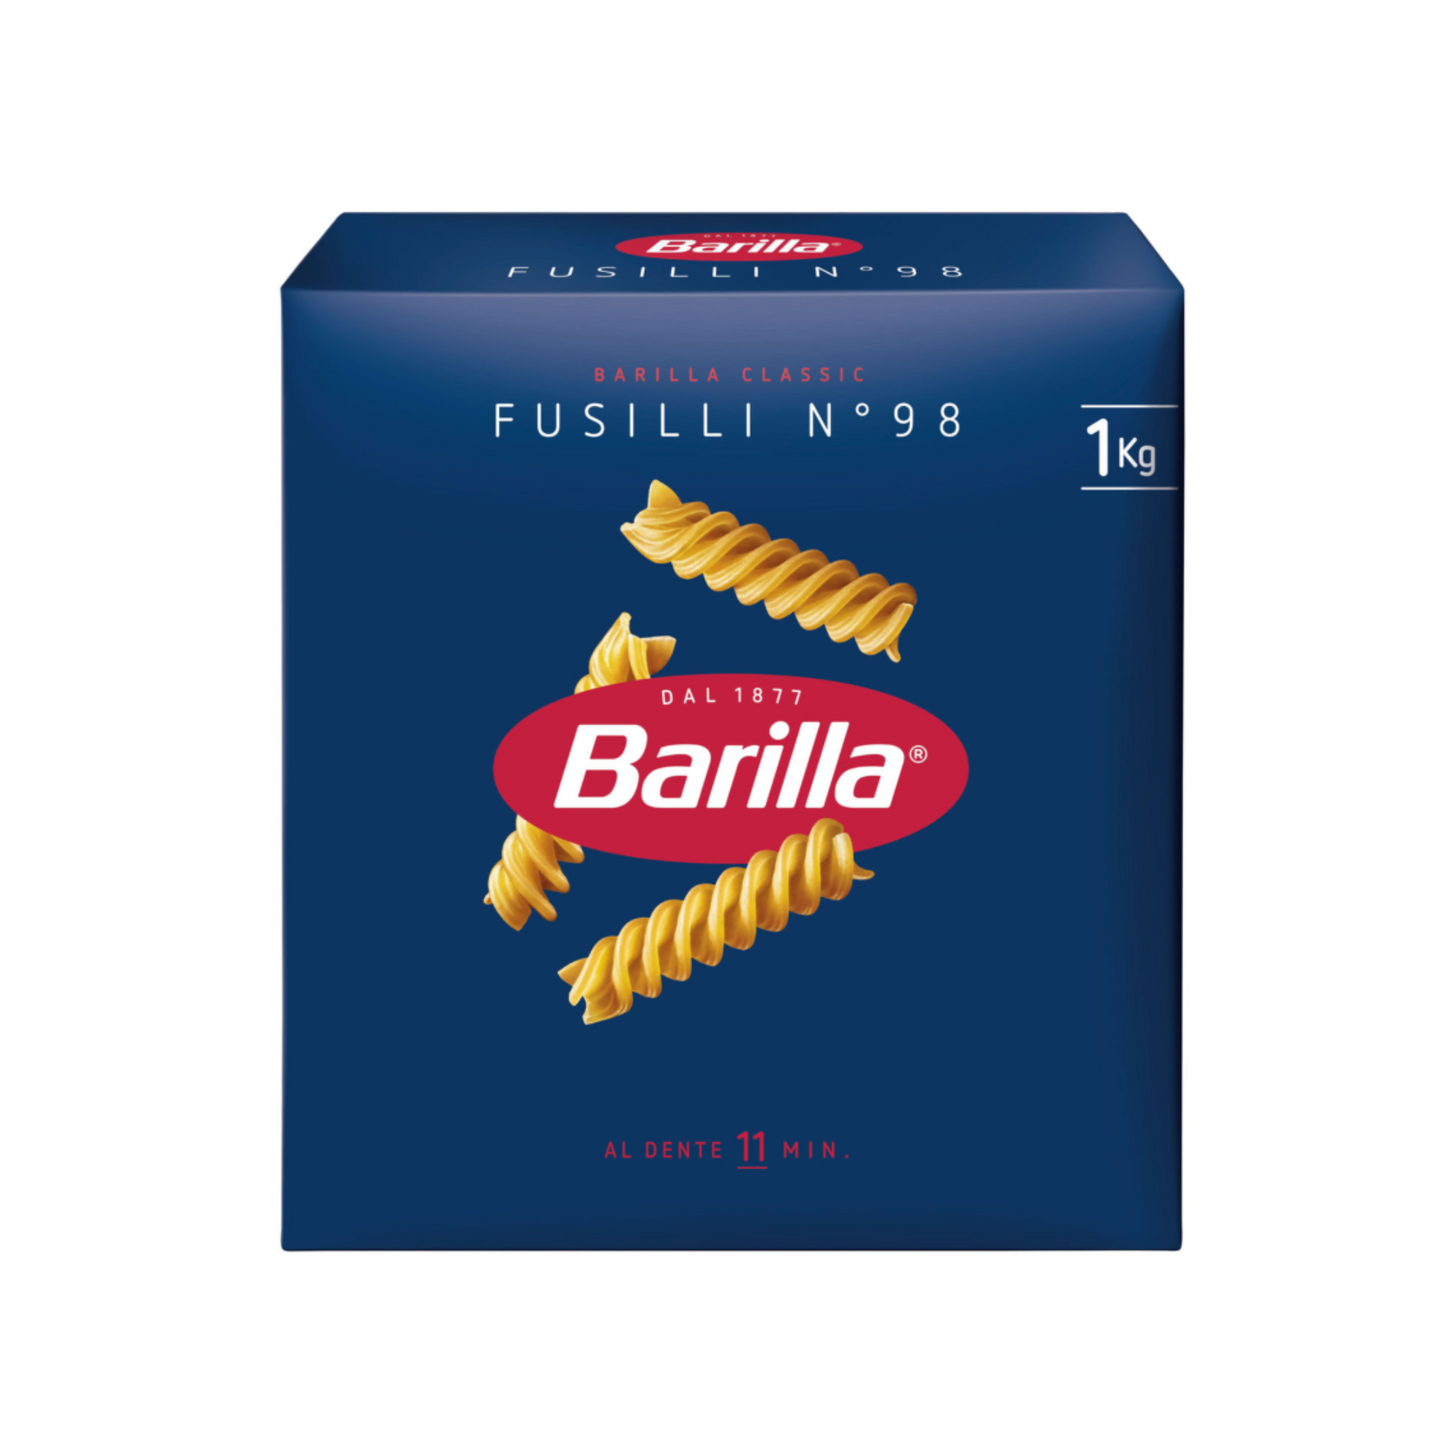 BARILLA Fusilli n.98 500g